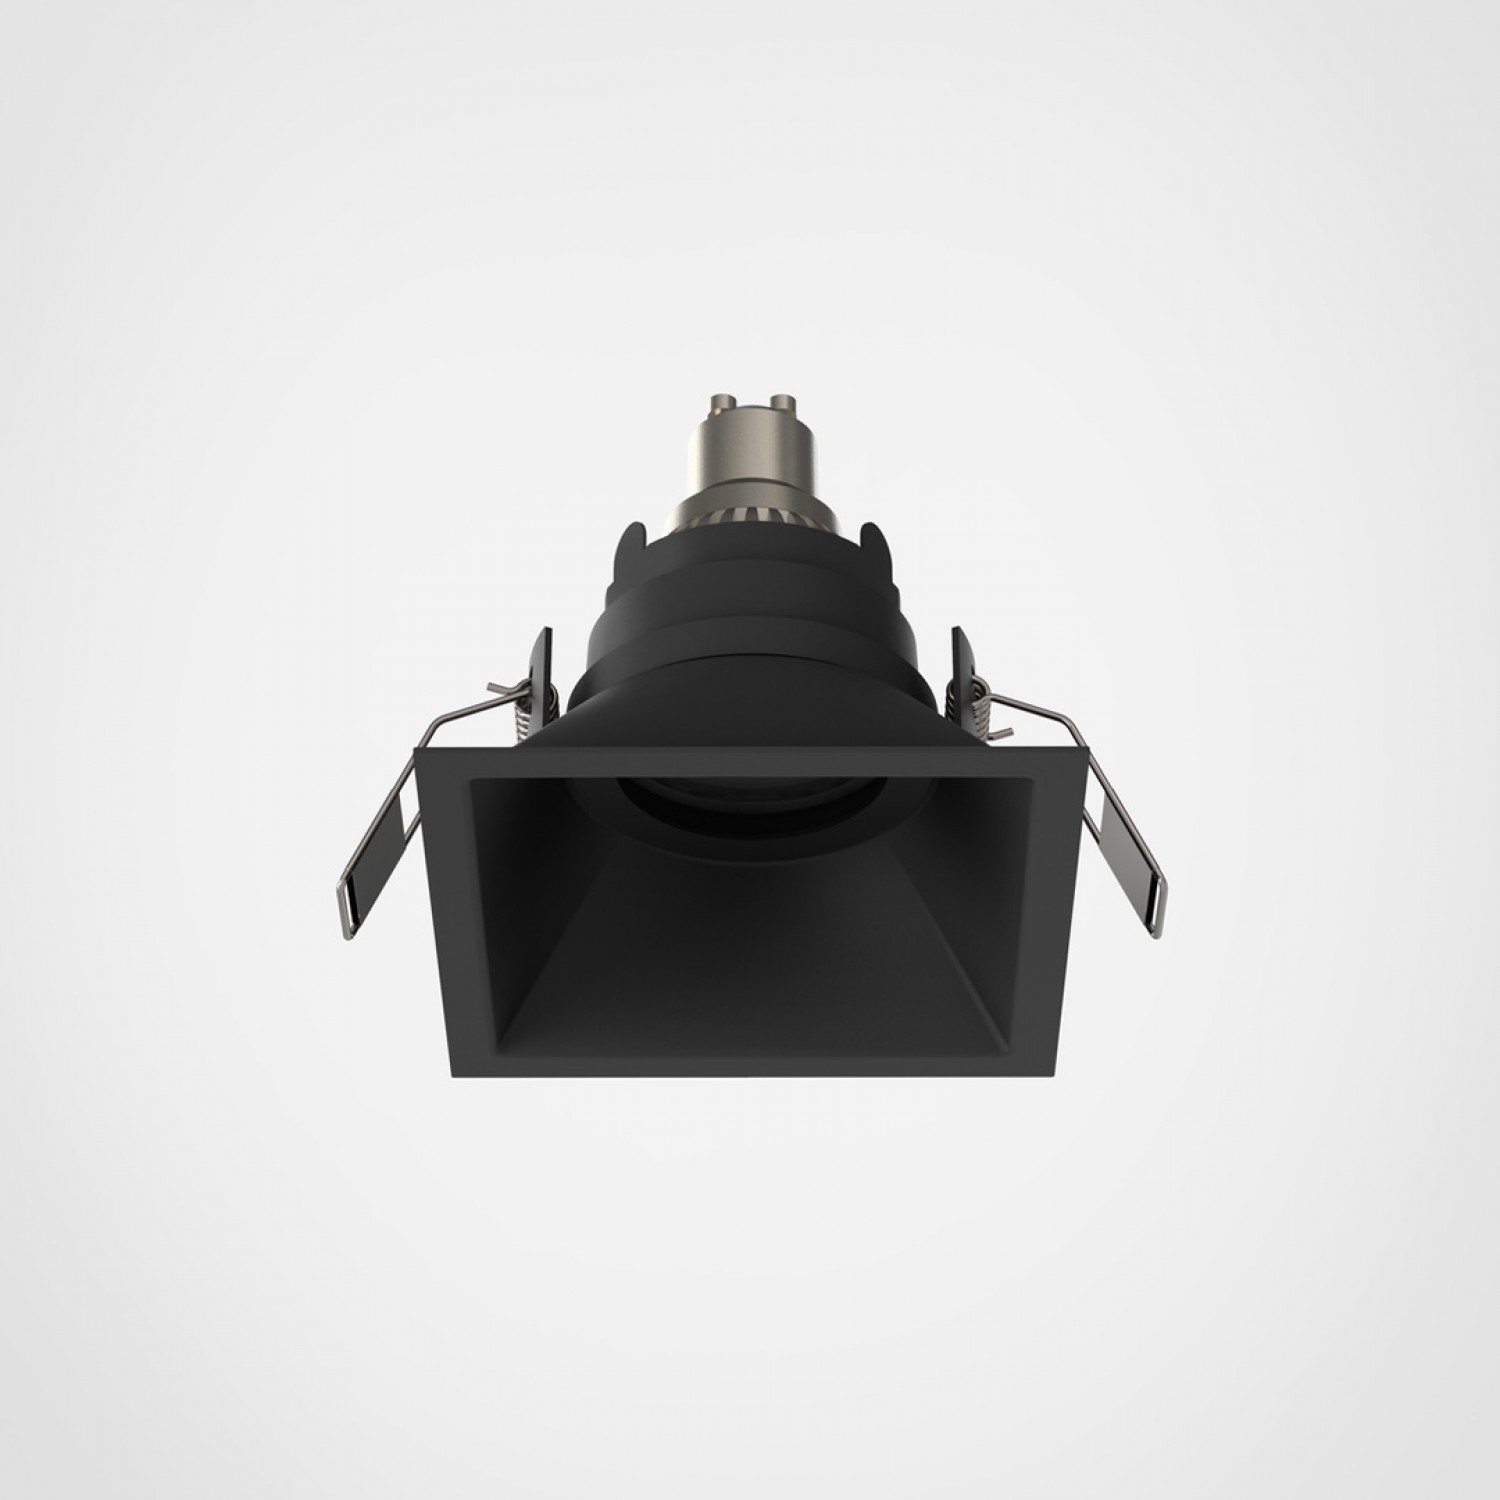 Врізний точковий світильник Astro Minima Slimline Square Fixed Fire-Rated IP65 1249039